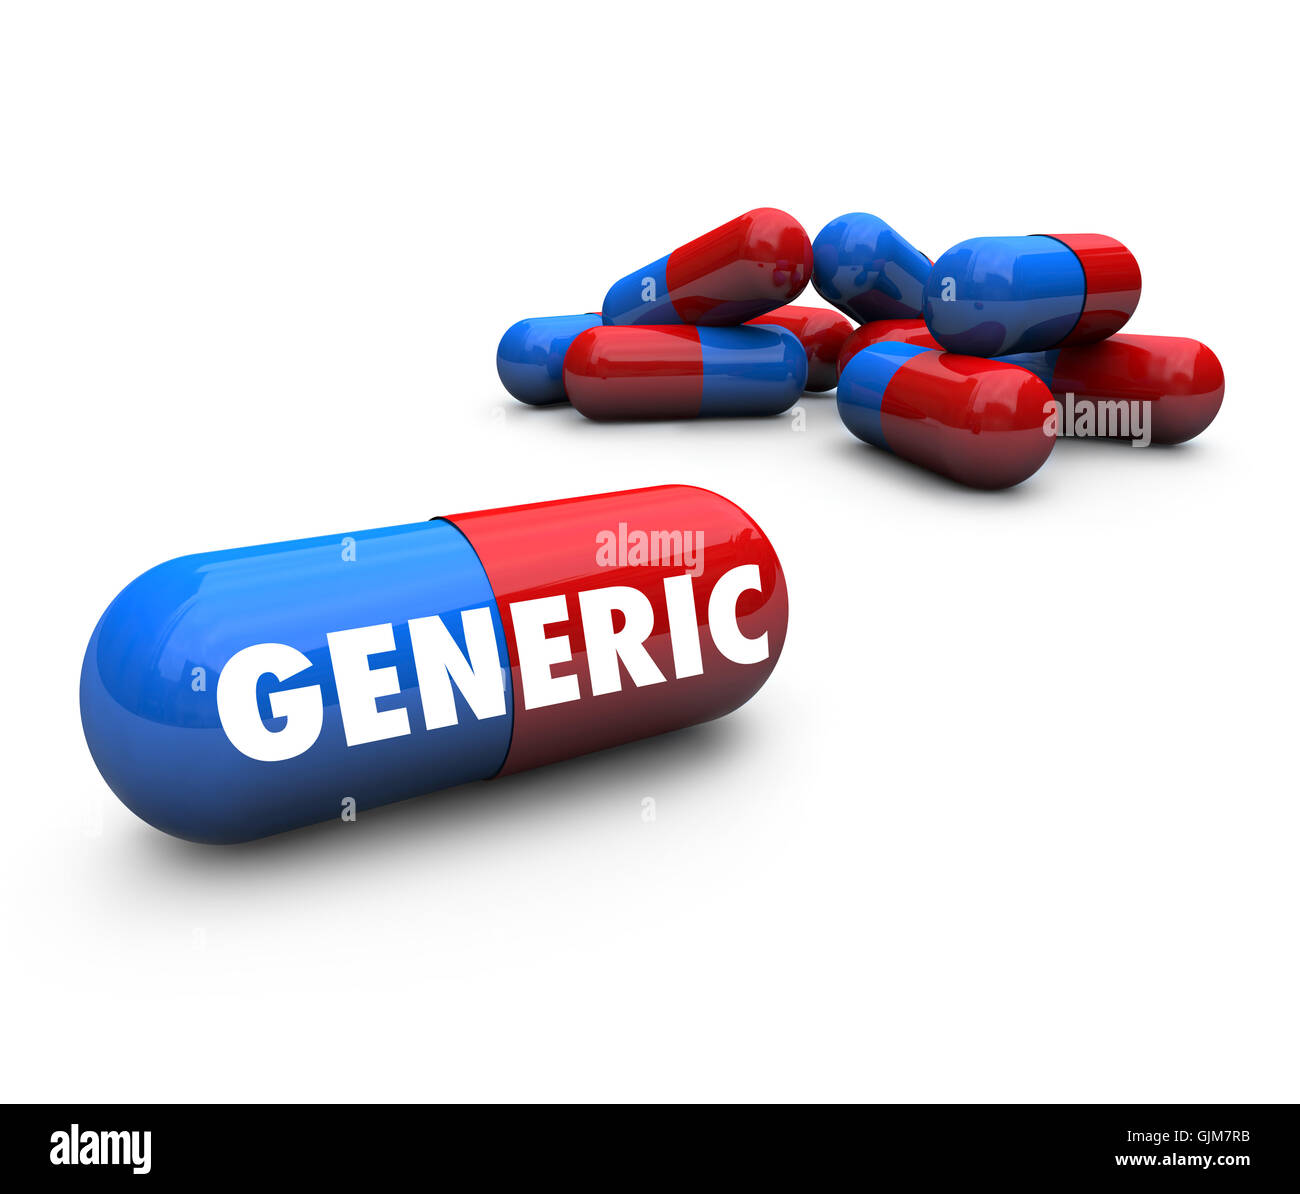 Capsula generico pillole - Nessun Nome farmaco di marca Foto Stock